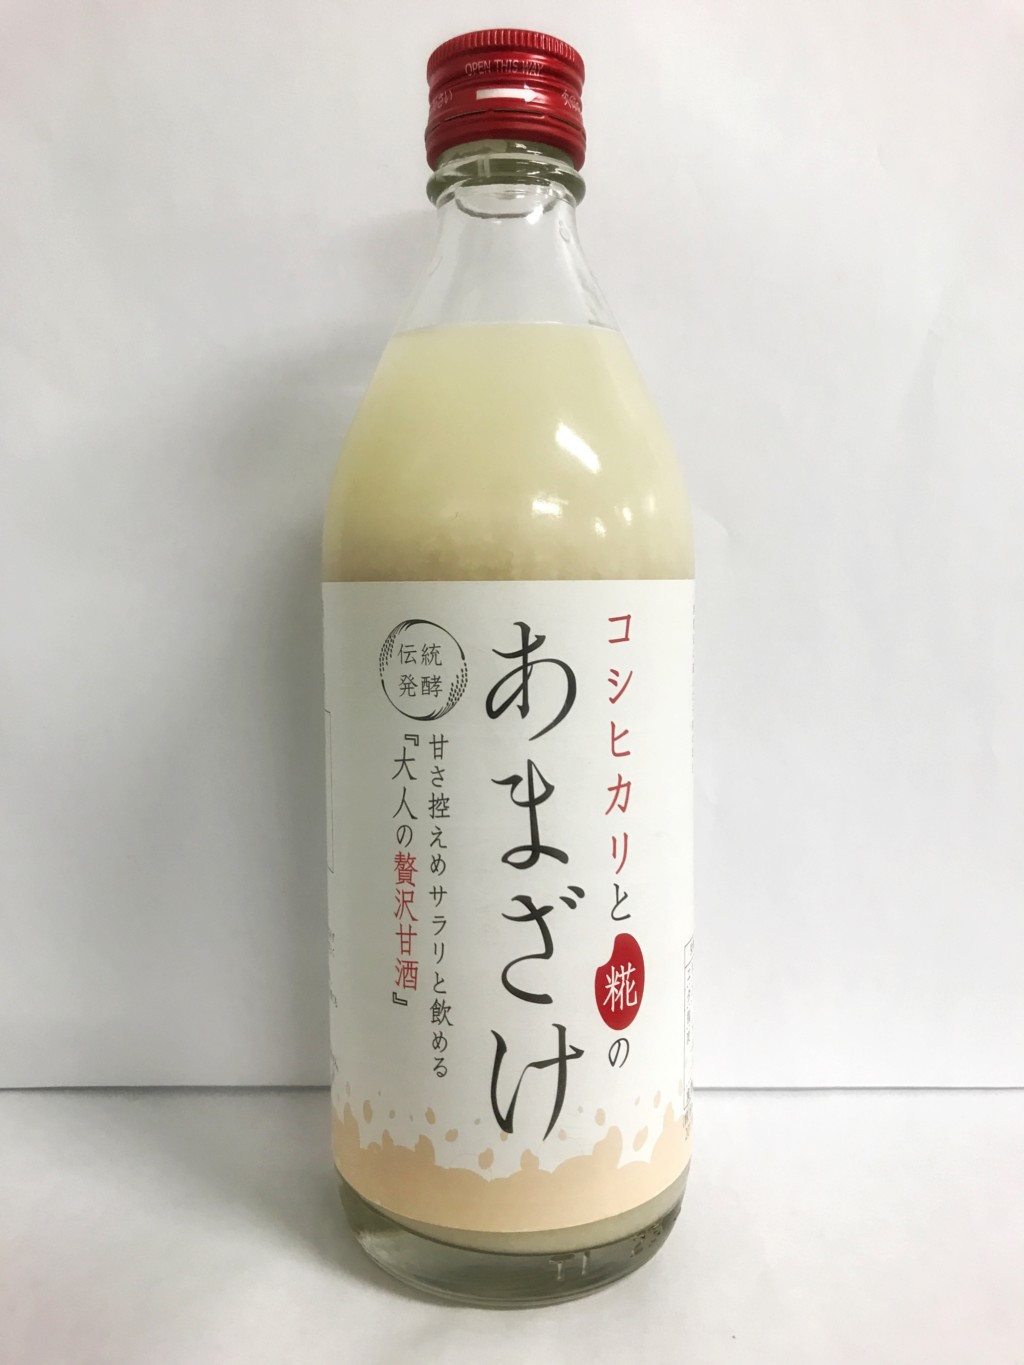 蔵内堂の米麹甘酒『コシヒカリと糀のあまざけ(大人の贅沢甘酒)』